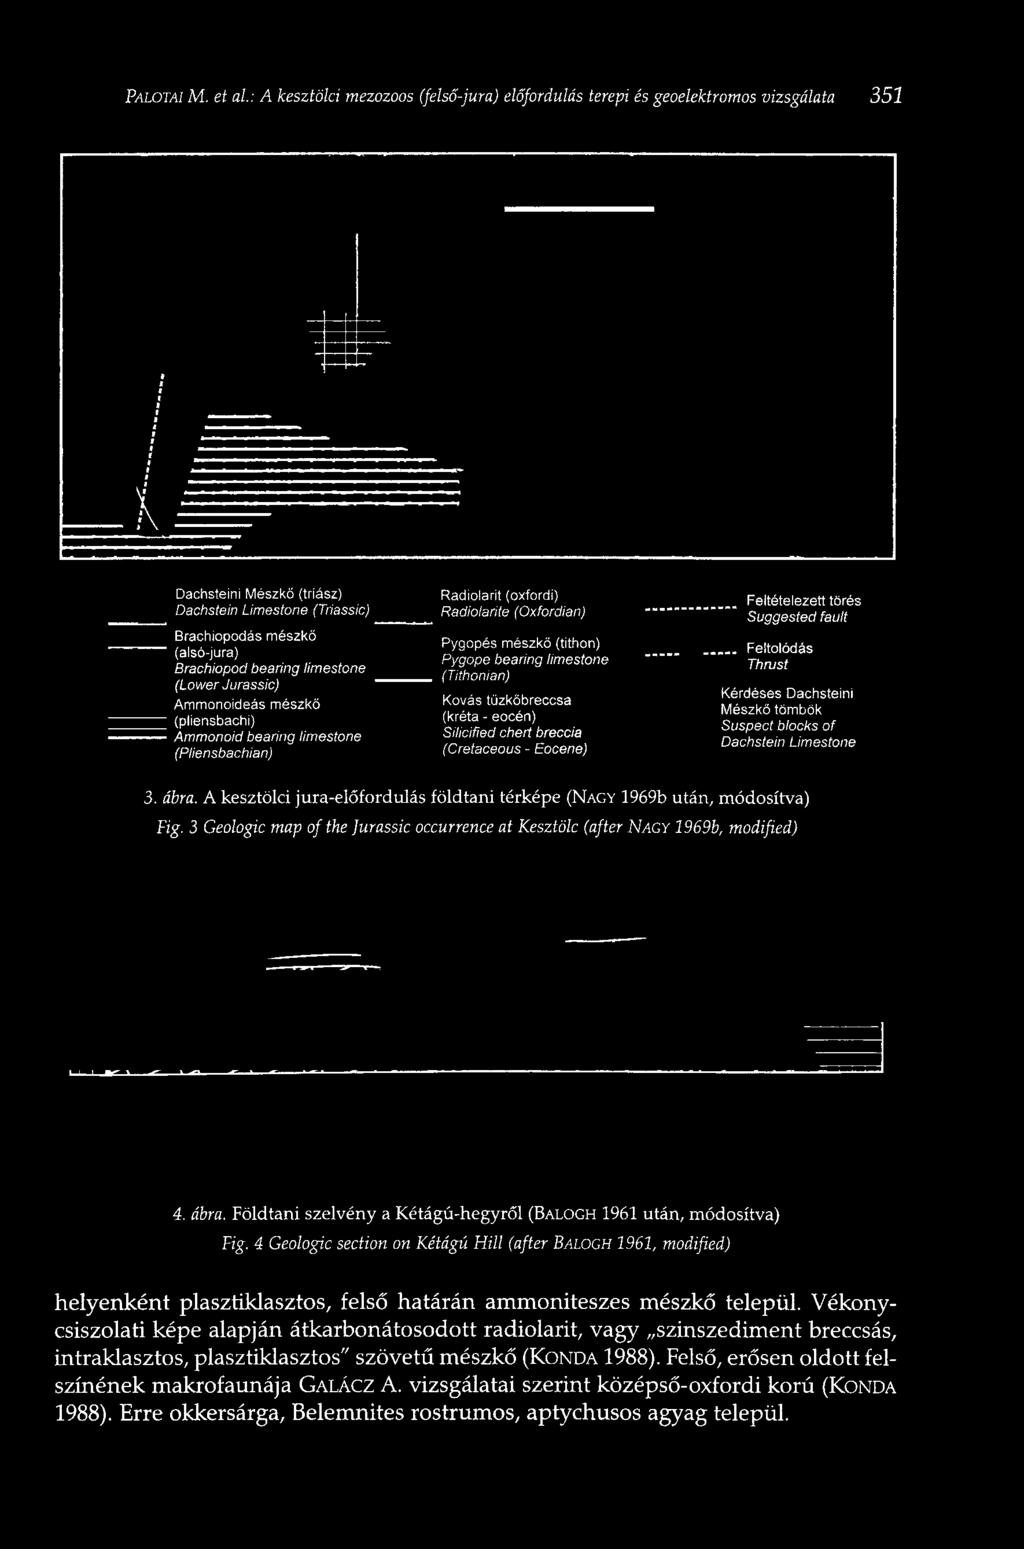 Dachsíeini Mészkő (triász) Dachstein Limestone (Triassic) Brachiopodás mészkő (alsó-jura)